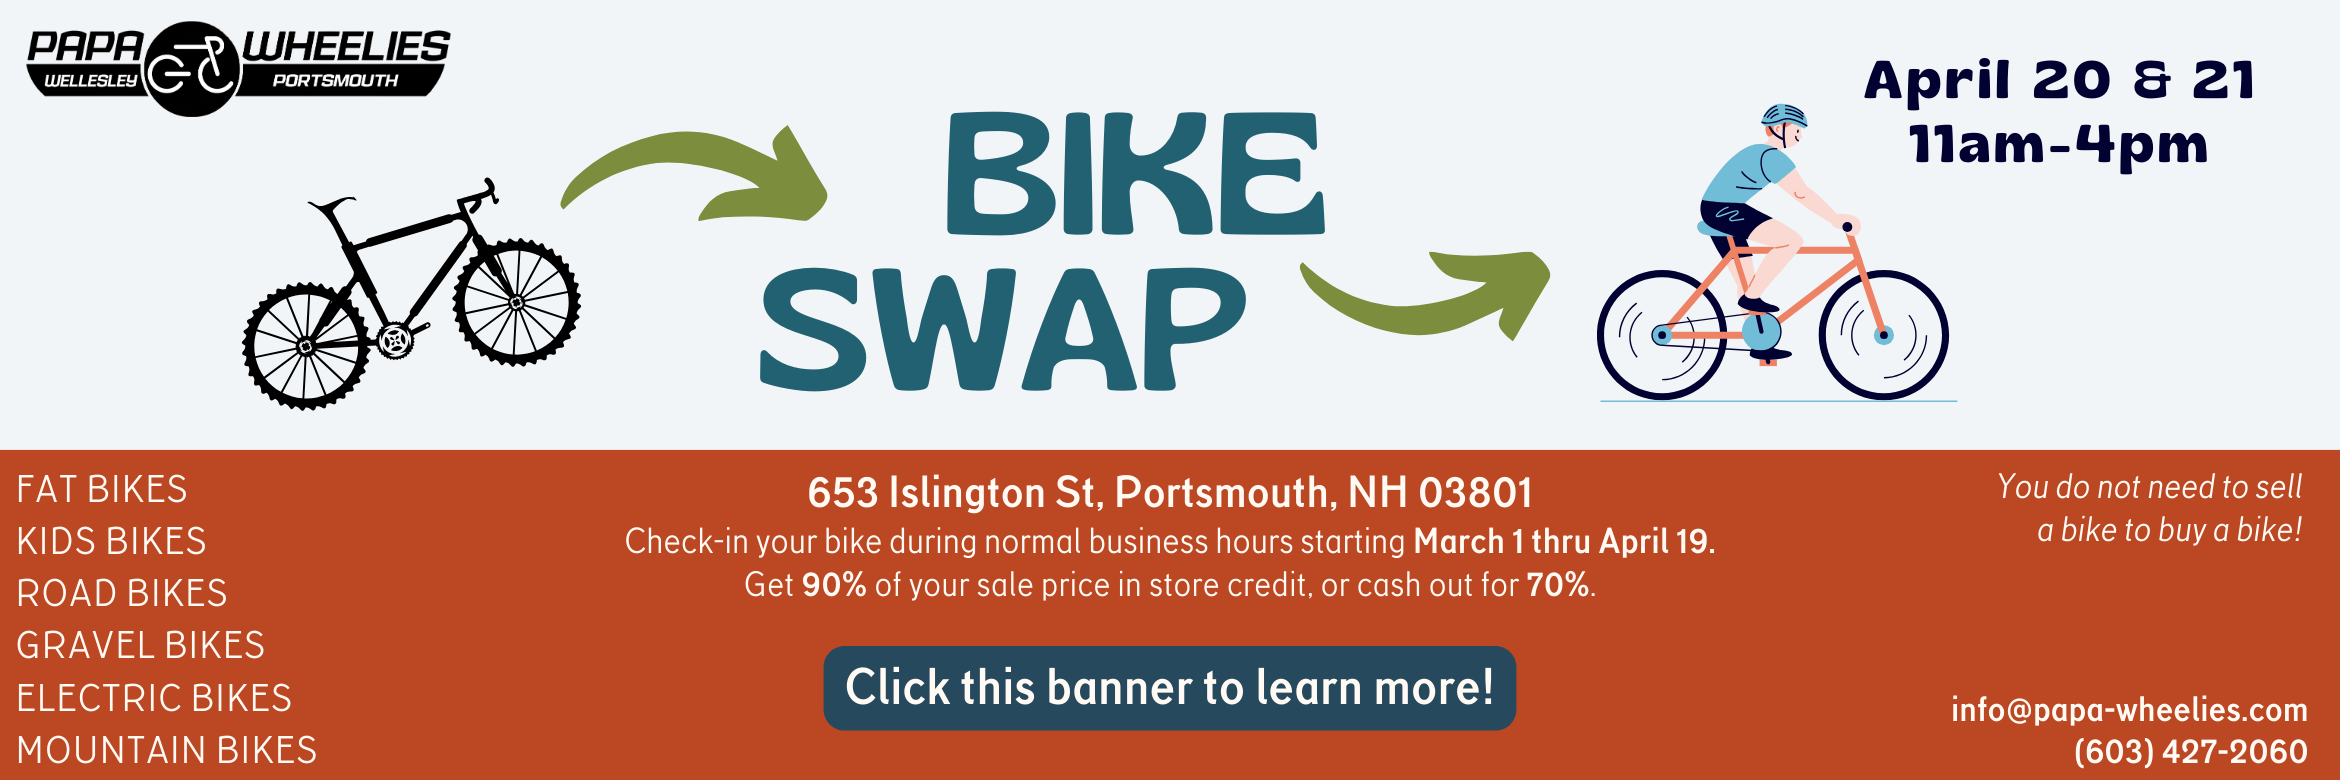 Bike Swap at Papa Wheelies Portsmouth, NH April 20-21st